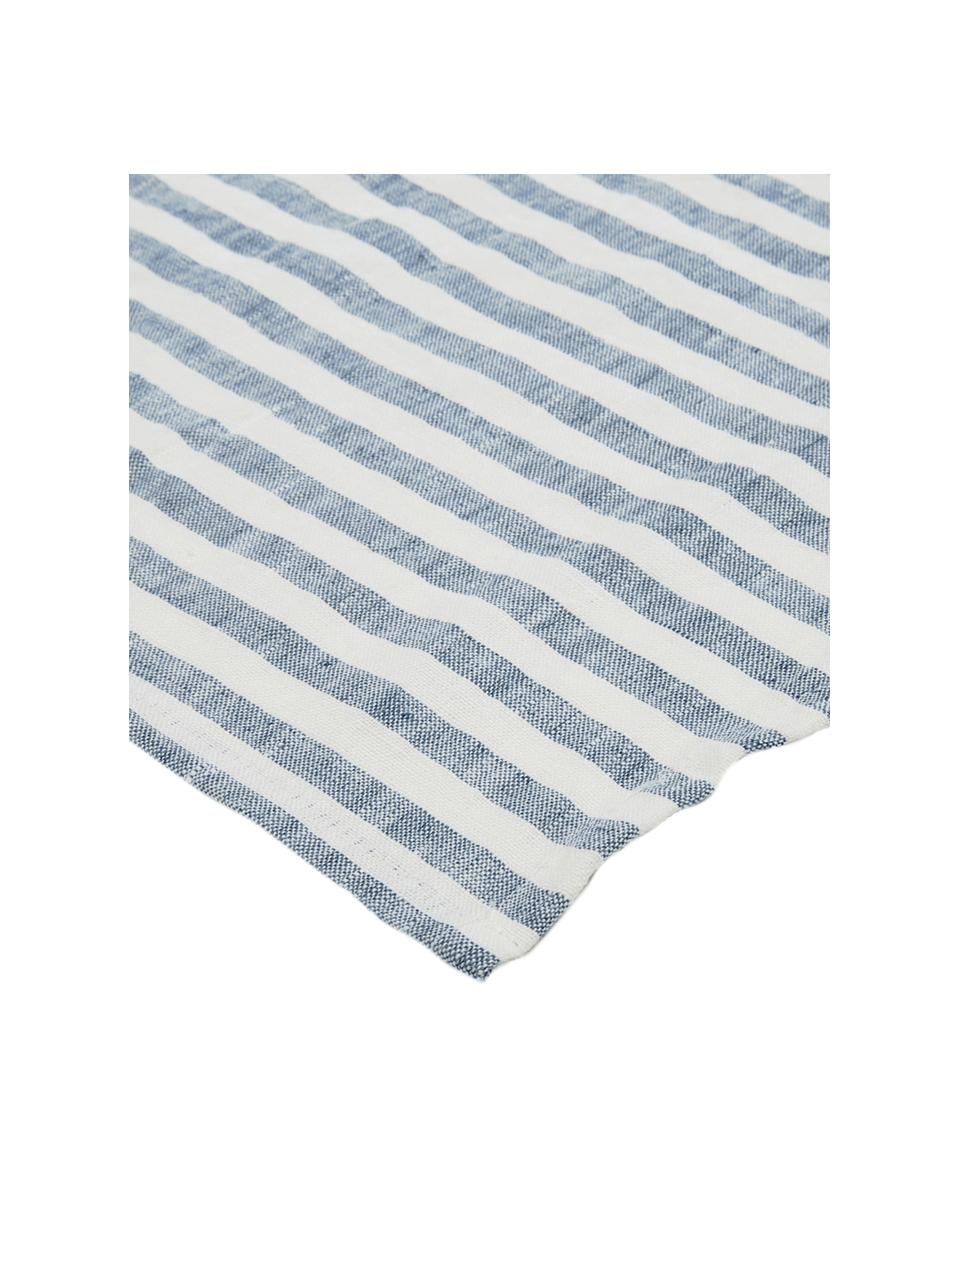 Tovaglia in lino Solami, Lino, Azzurro, bianco, Per 6-8 persone (Larg. 150 x Lung. 250 cm)